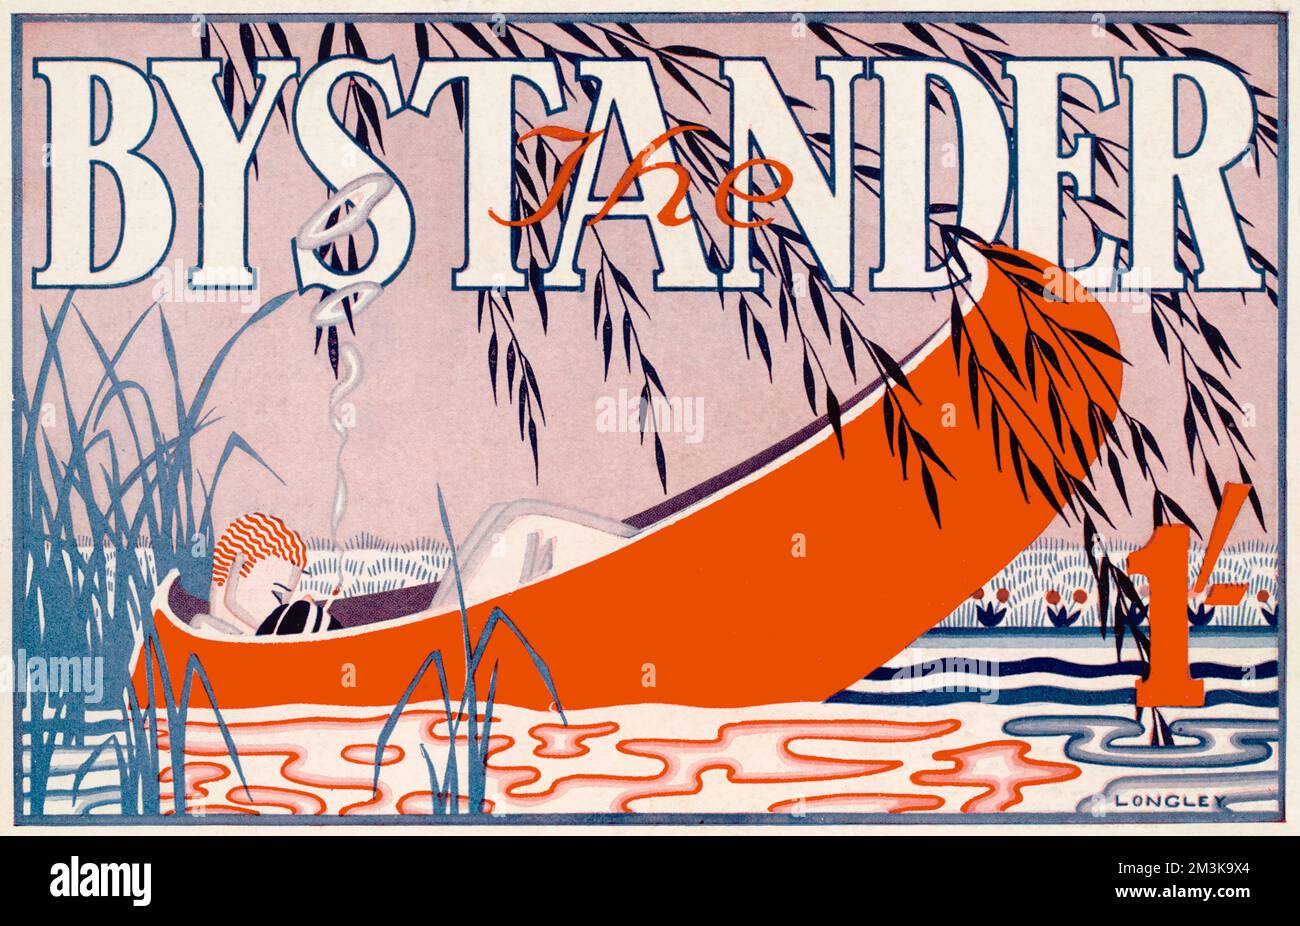 Un'illustrazione stilizzata in stile art deco per la testa di Bystander che mostra una scena fluviale con un giovane e luminoso rilassante &amp; fumare in una barca che bonding dalla banca. Data: 2 luglio 1930 Foto Stock